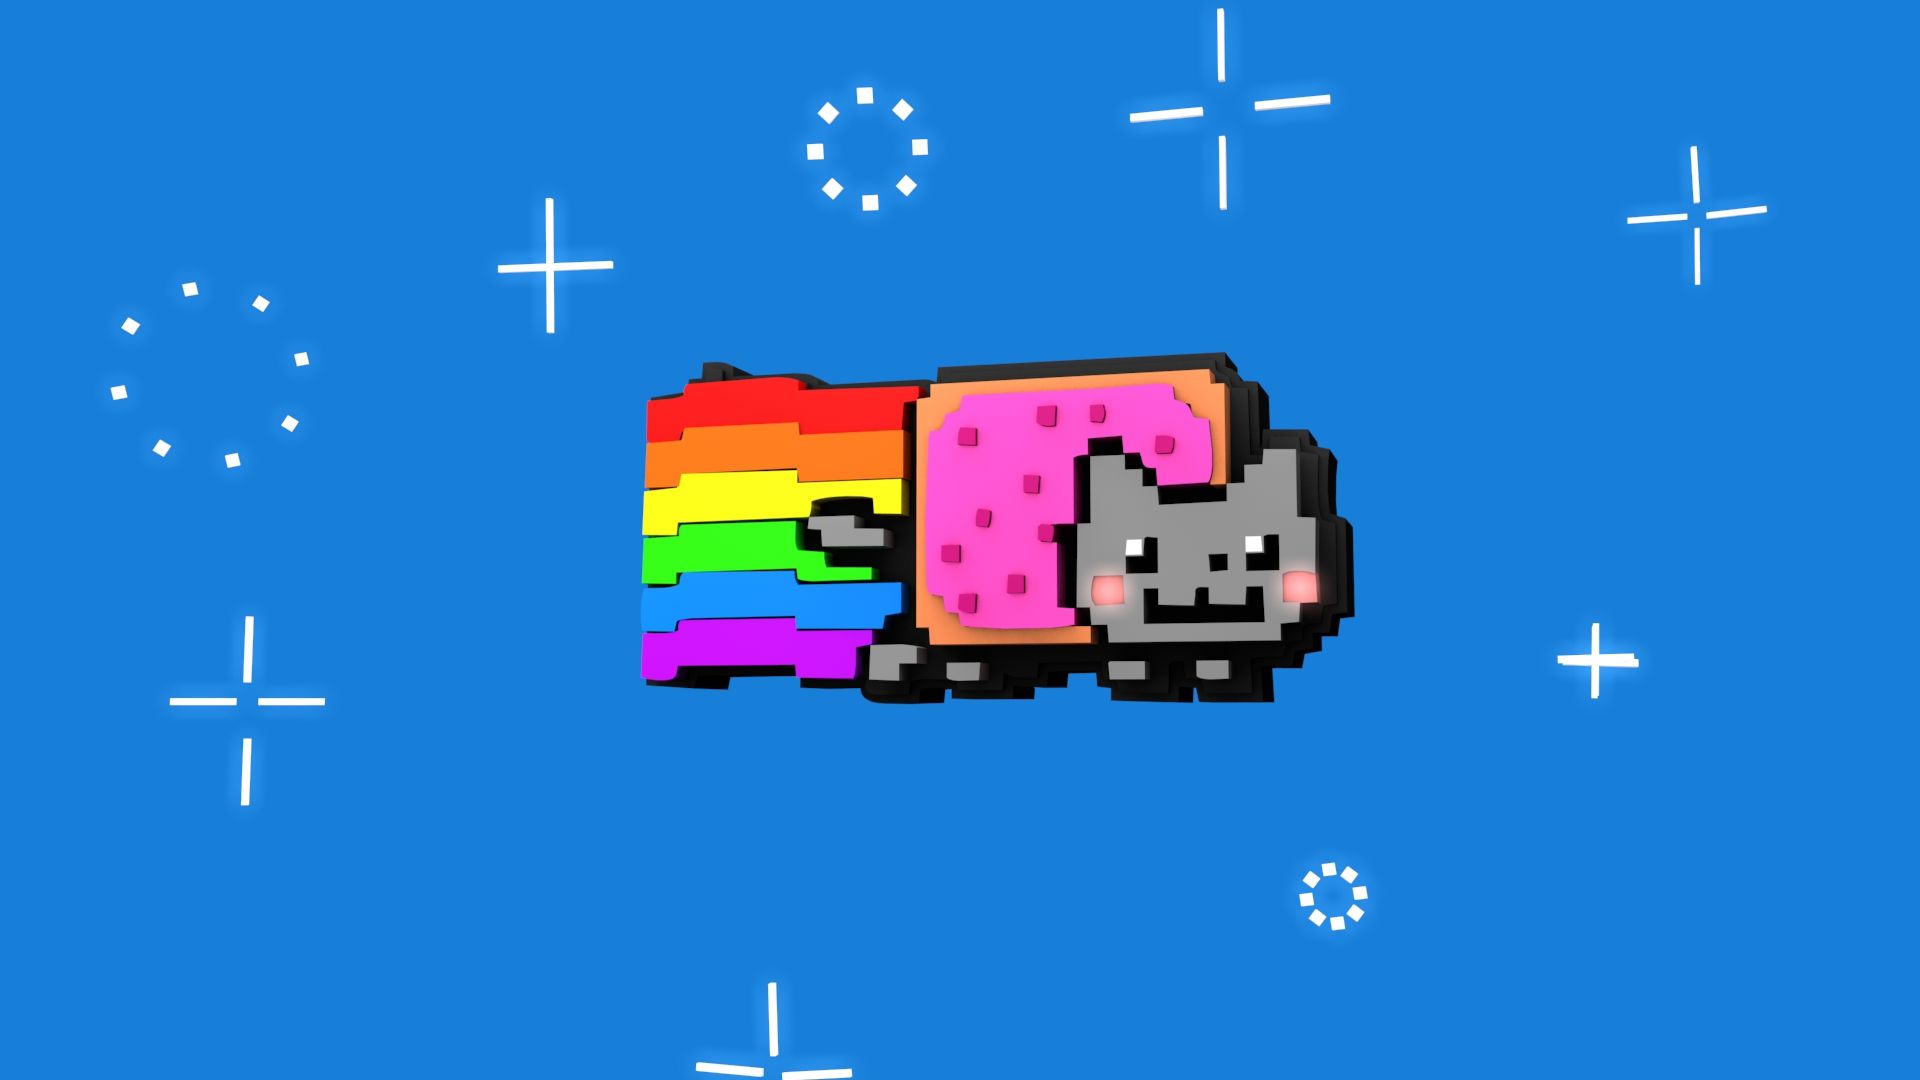 File Name Nyan Cat W1 Jpeg Resolution 1920x1920 Image Type Image ...